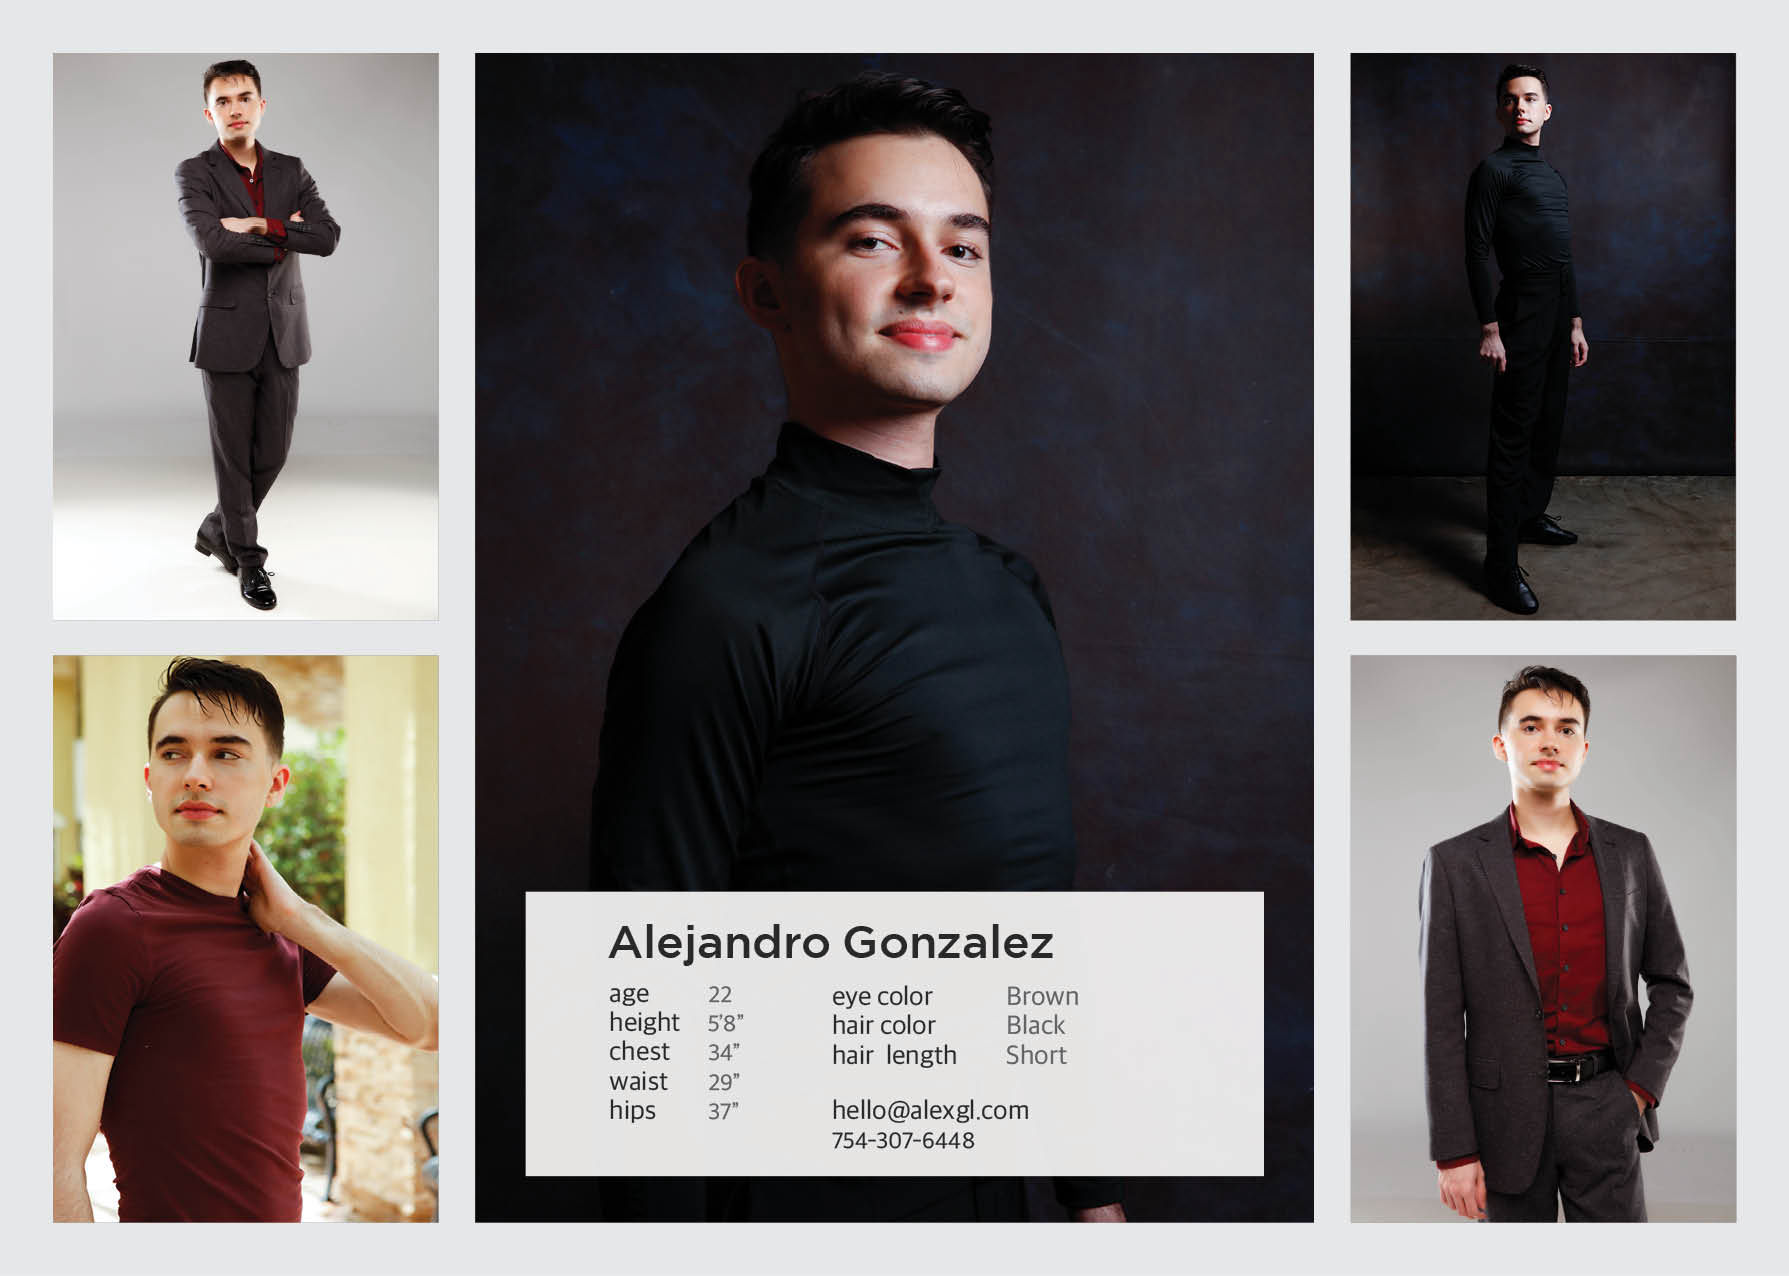 Alejandro Gonzalez ZCard hello@alexgl.com Age: 22, Height: 5'8"